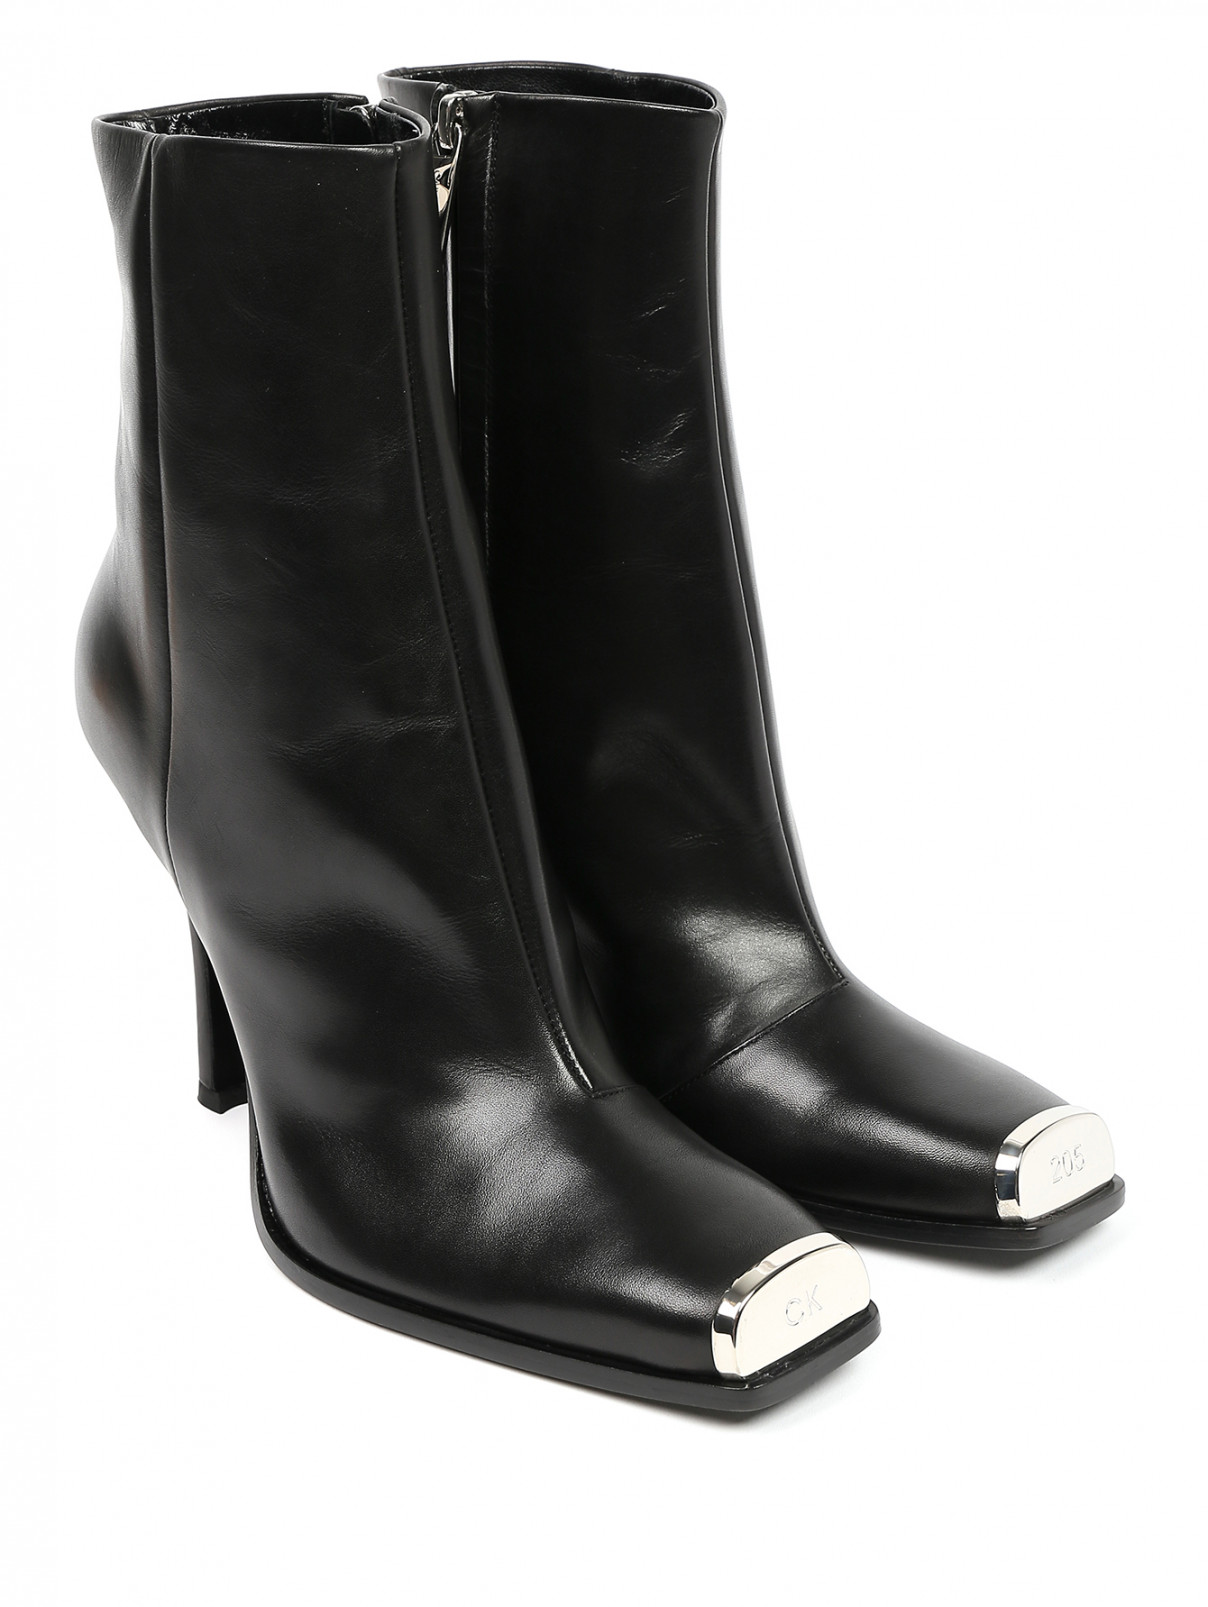 Ботильоны из кожи с металлической фурнитурой Calvin Klein 205W39NYC  –  Общий вид  – Цвет:  Черный